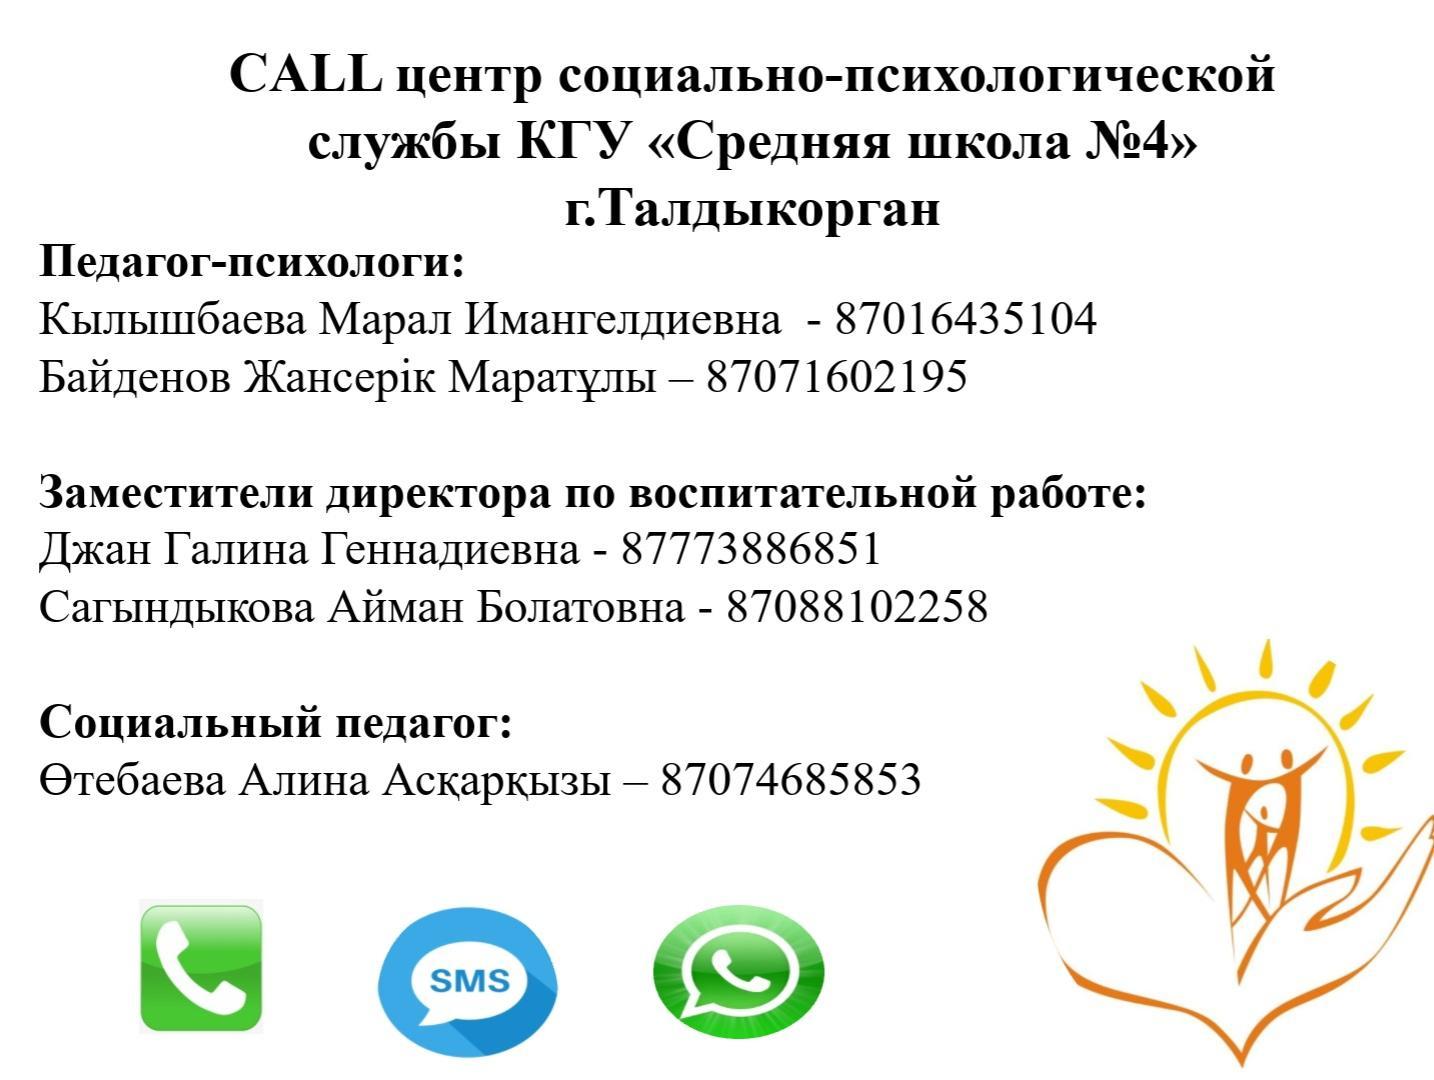 CALL центр социально-психологической службы КГУ "Средняя школа №4" г. Талдыкорган